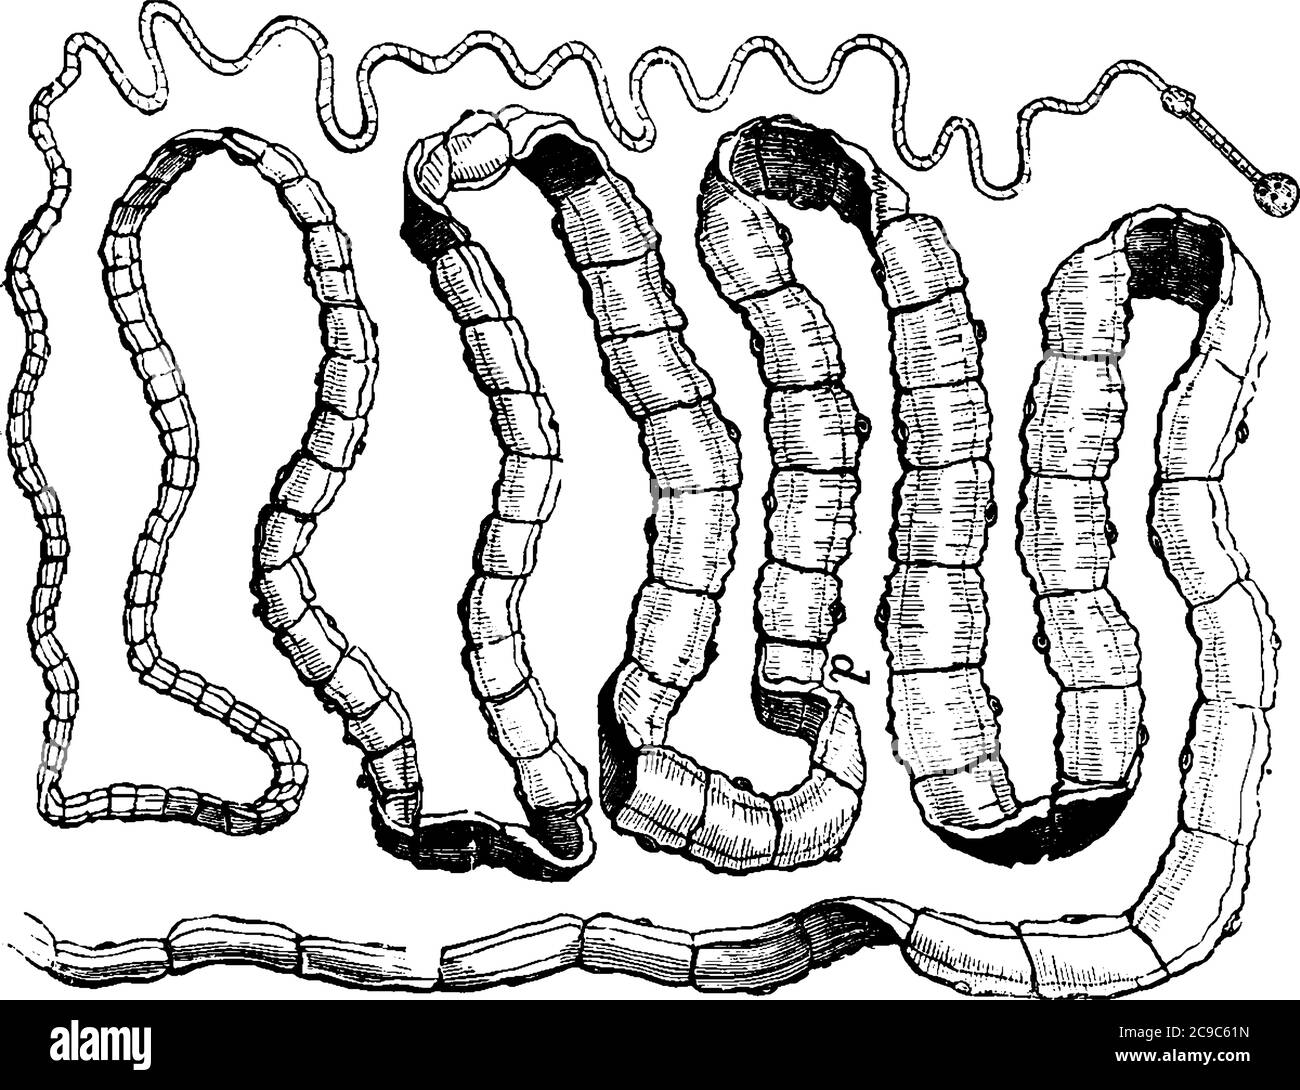 Il tapeworm, si ancora agli intestini delle sue vittime, mediante ganci e ventose alla testa, il suo corpo è composto da numerosi segmenti, e t Illustrazione Vettoriale